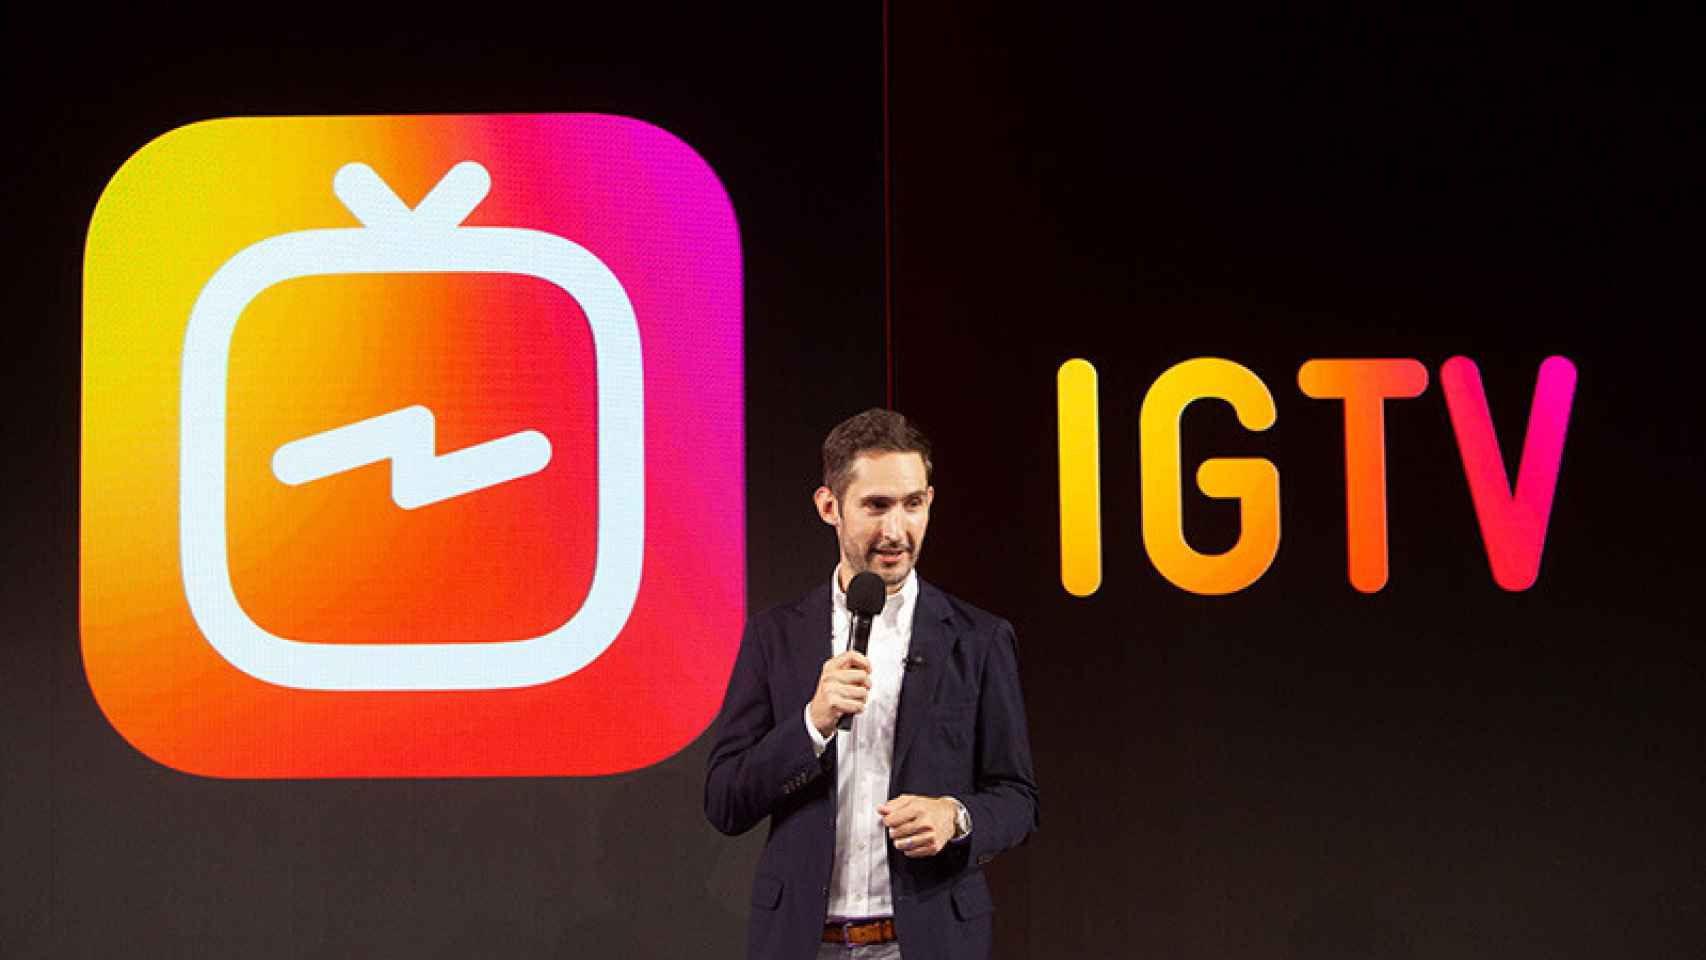 Instagram va a por YouTube: IGTV, vídeos de hasta 60 minutos en la app